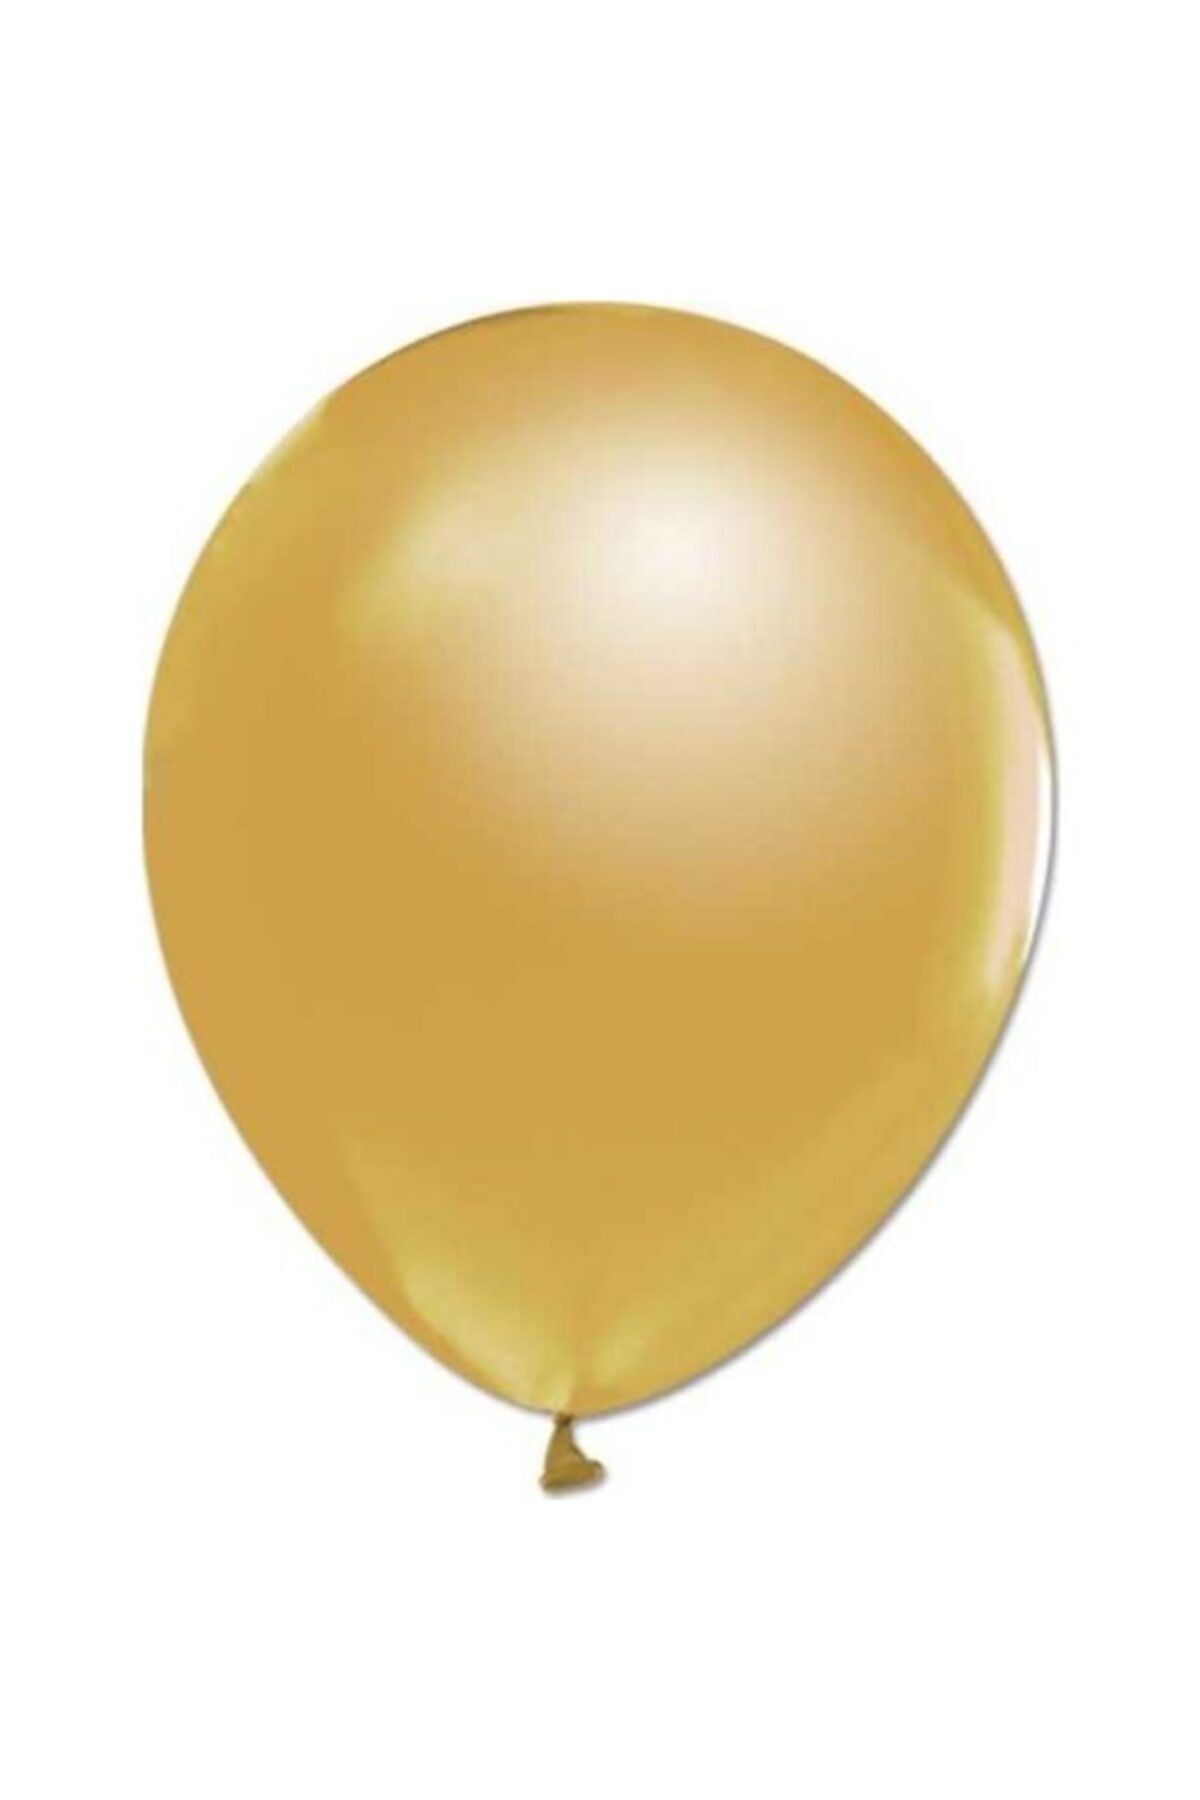 Balon 20 Adet Balon 12 Inç Metalik Parti Süsleme Altın ( 25 Cm * 30 Cm)_0